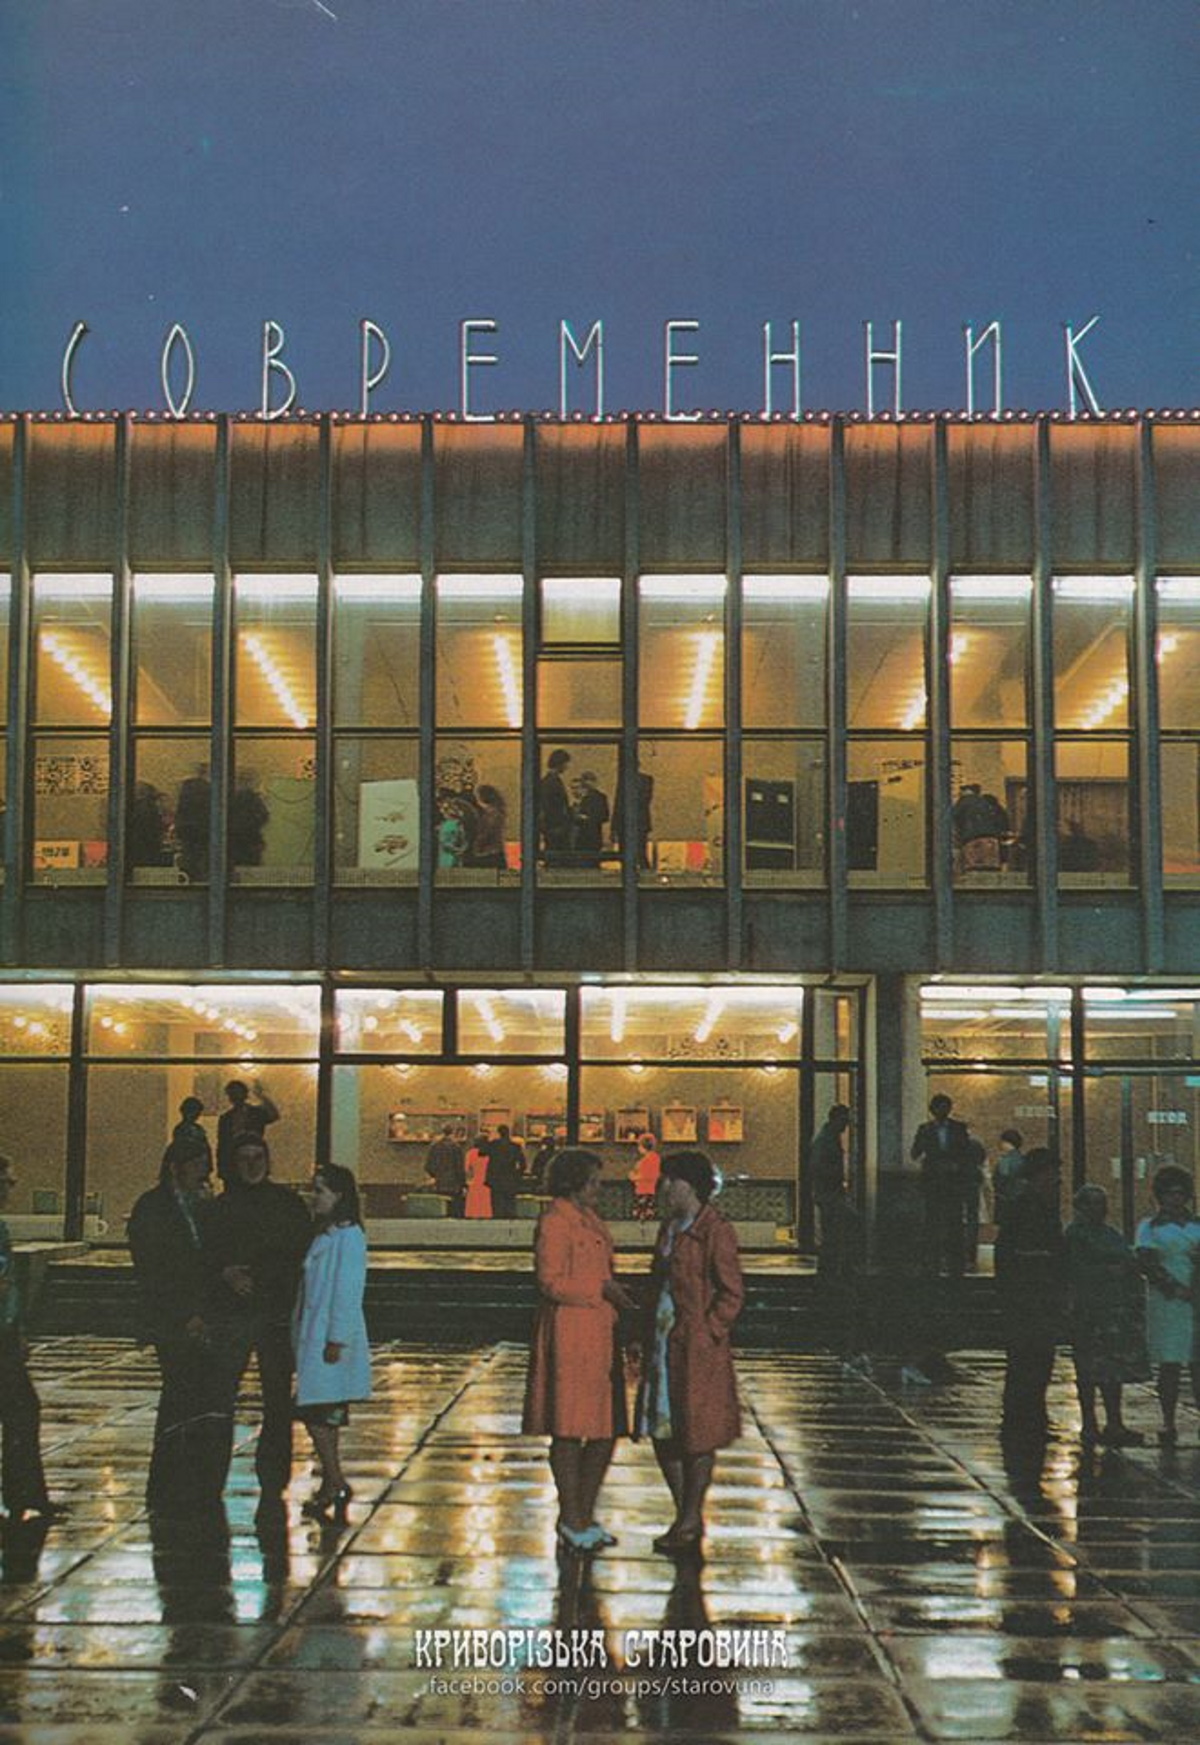 Кинотеатр "Современник" год 1983.